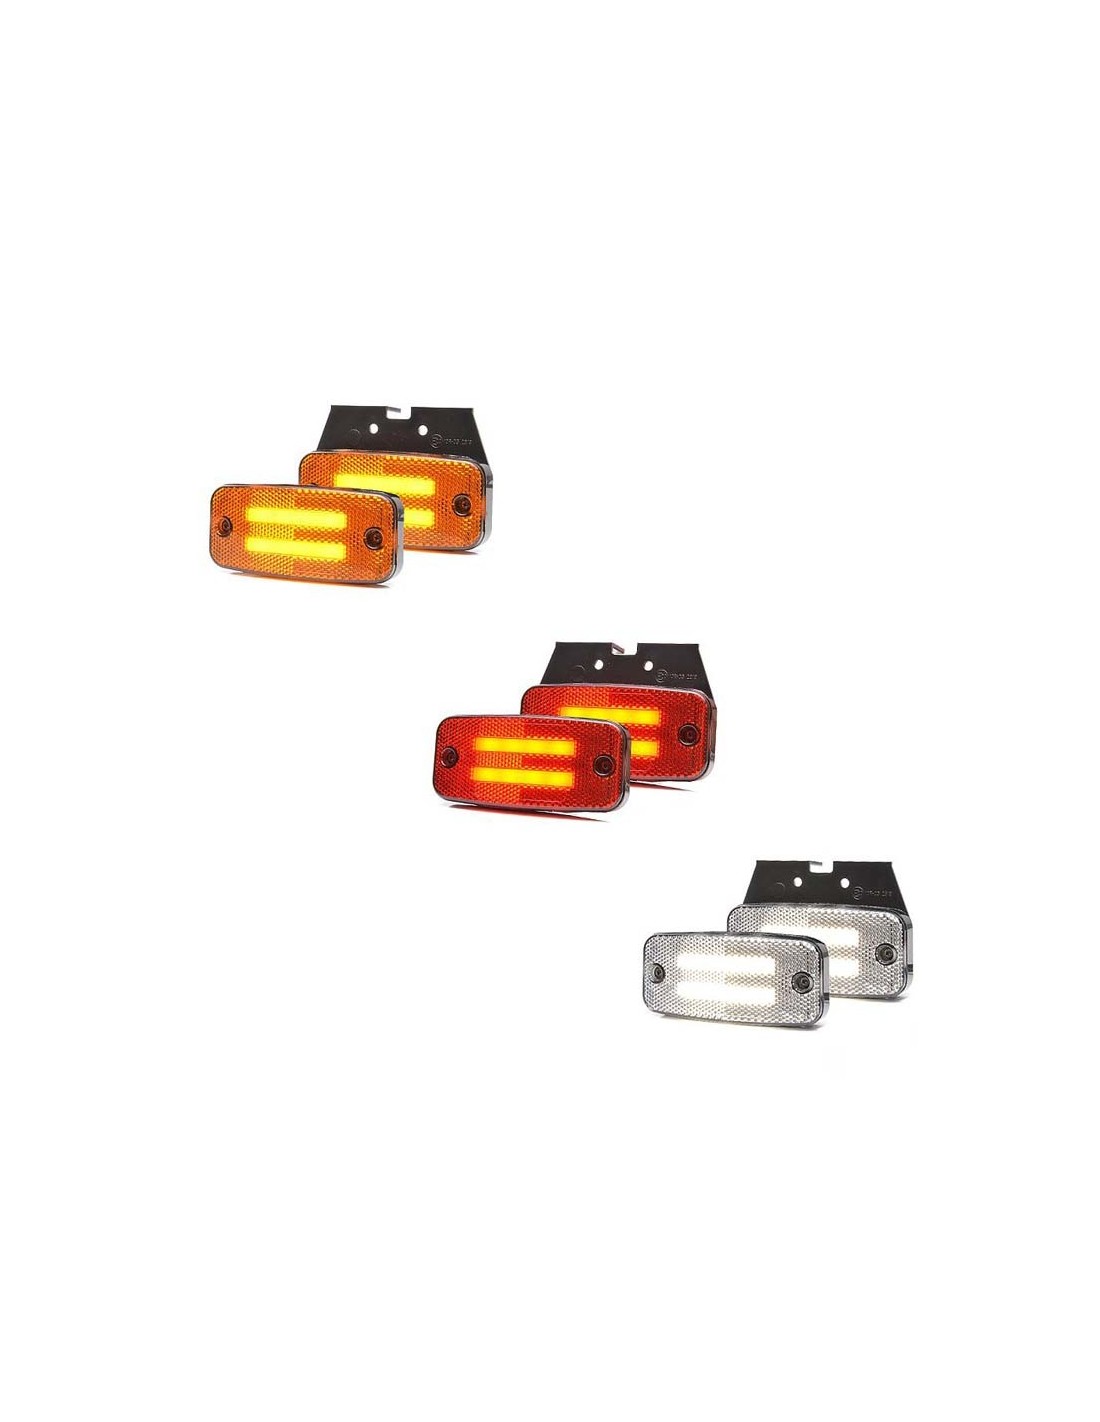 Phare LED avec feux de position blanc et orange pour 4x4 et Vamion